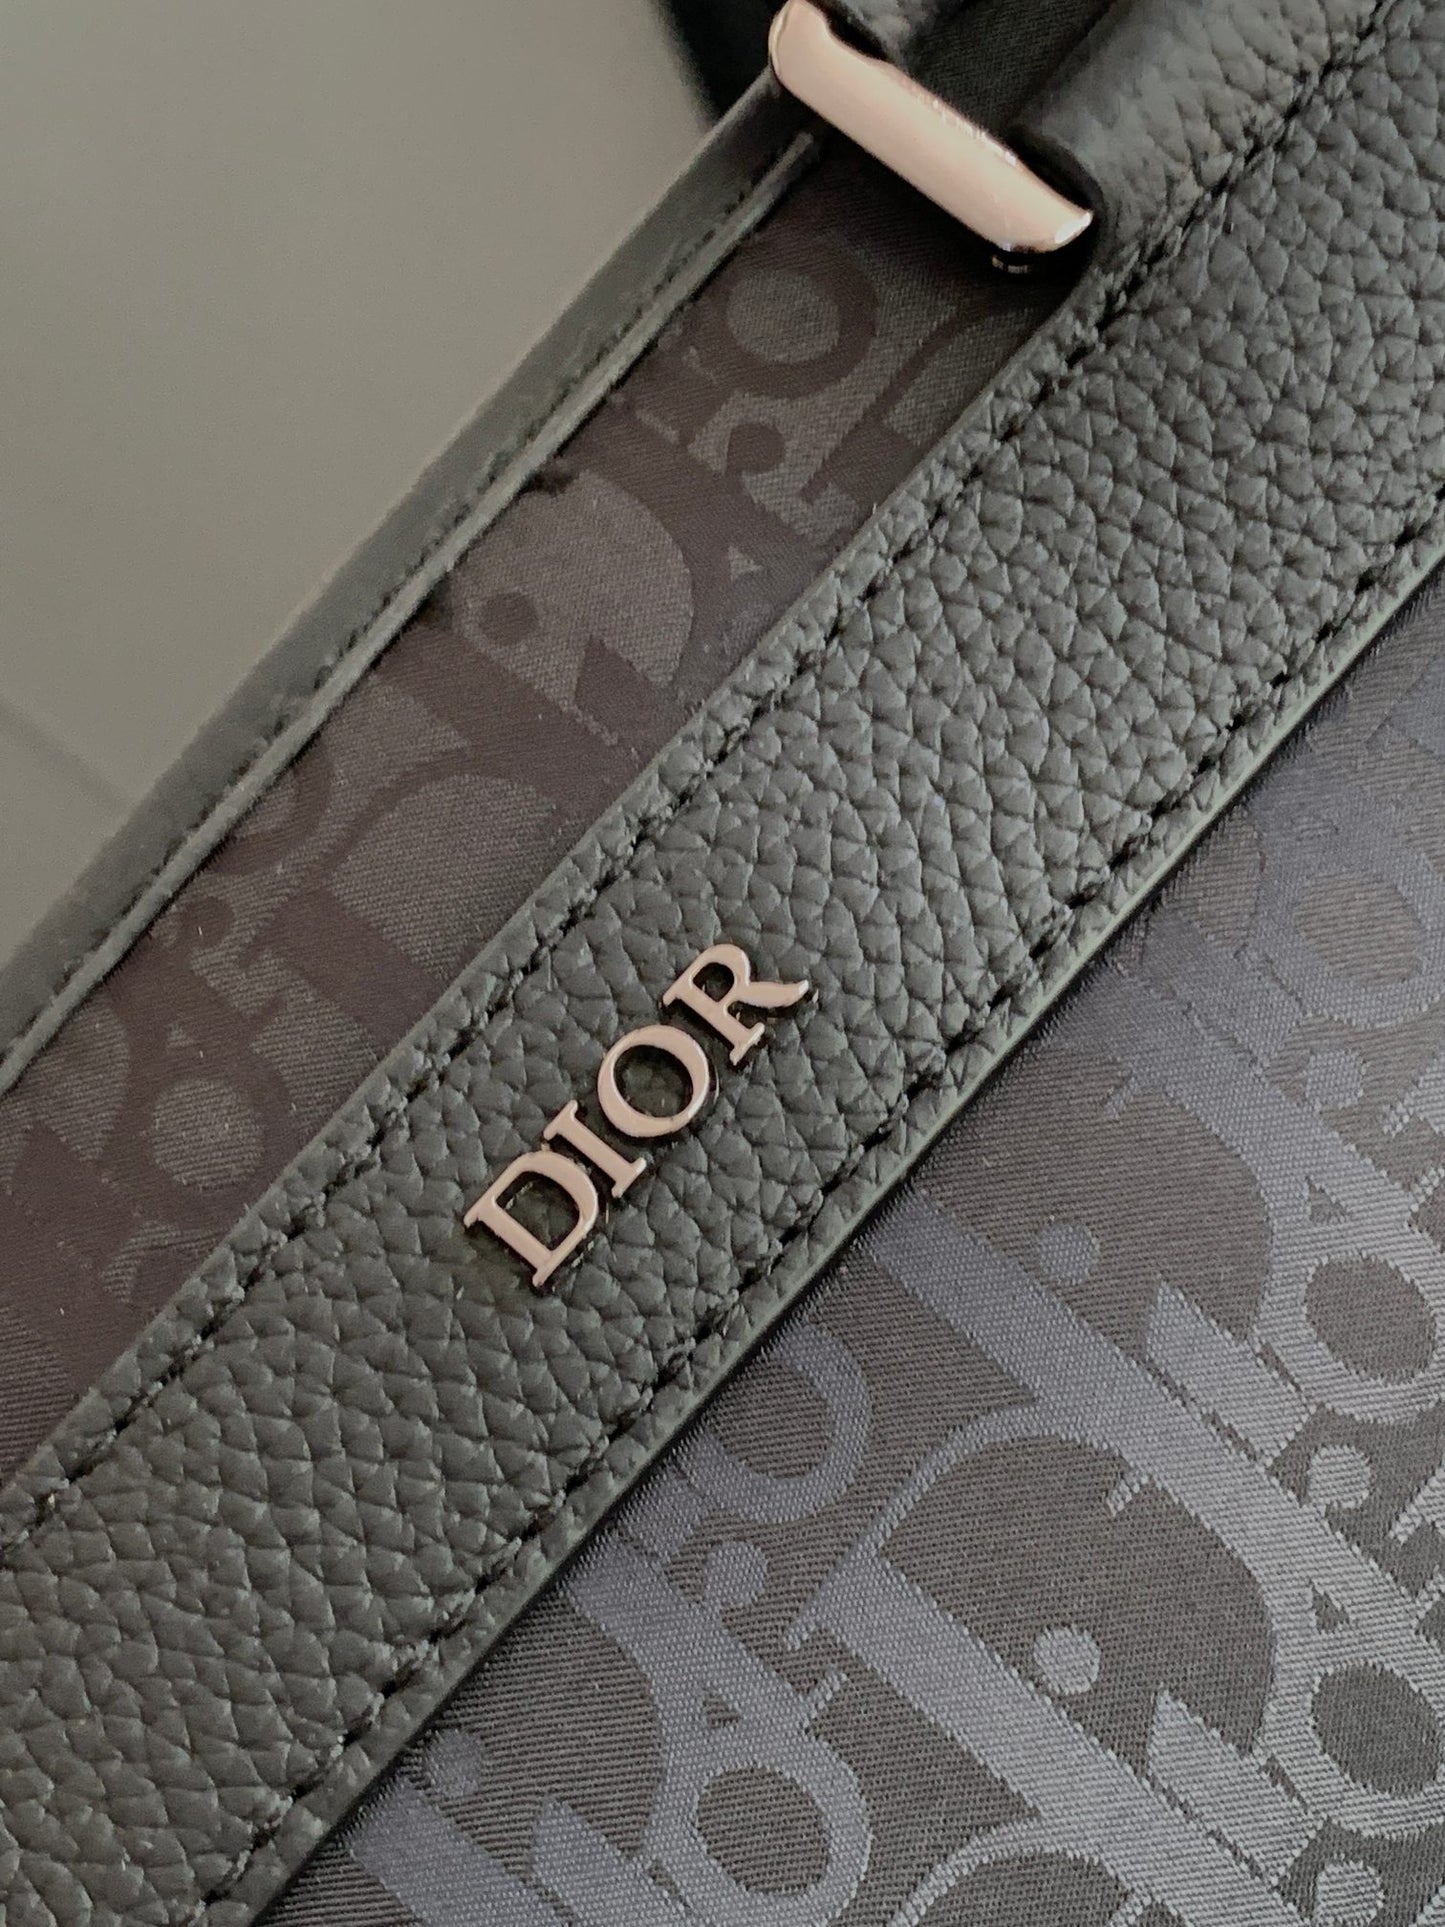 Dior Exproler backpack